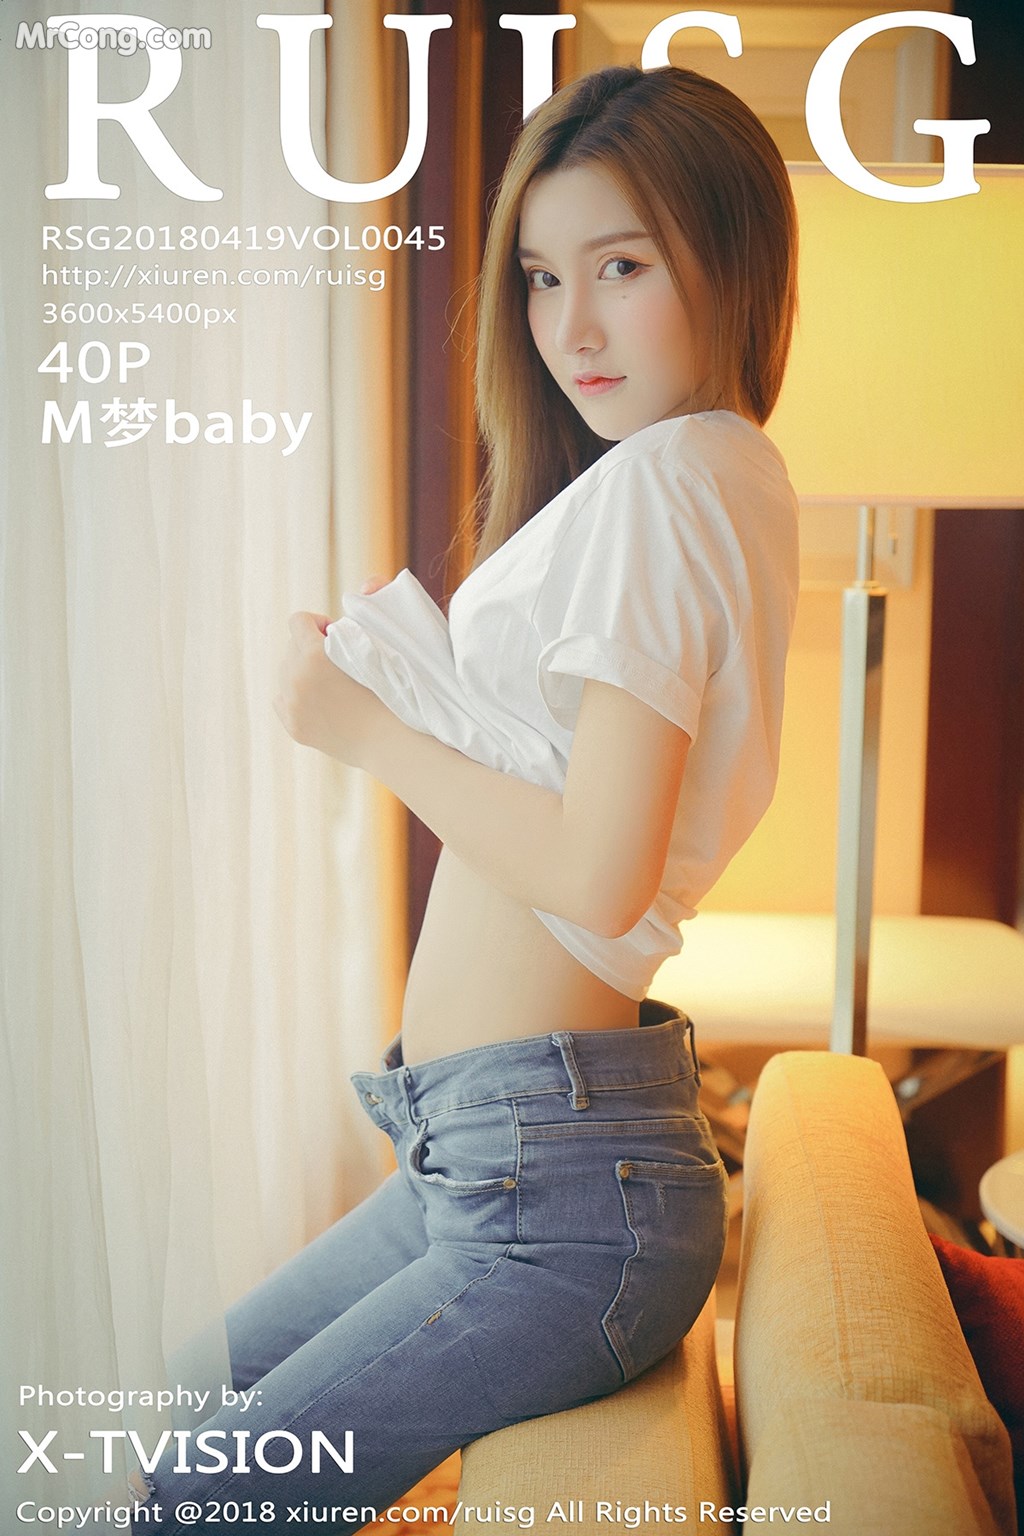 RuiSG Vol.045: Model M 梦 baby (41 photos) photo 1-0